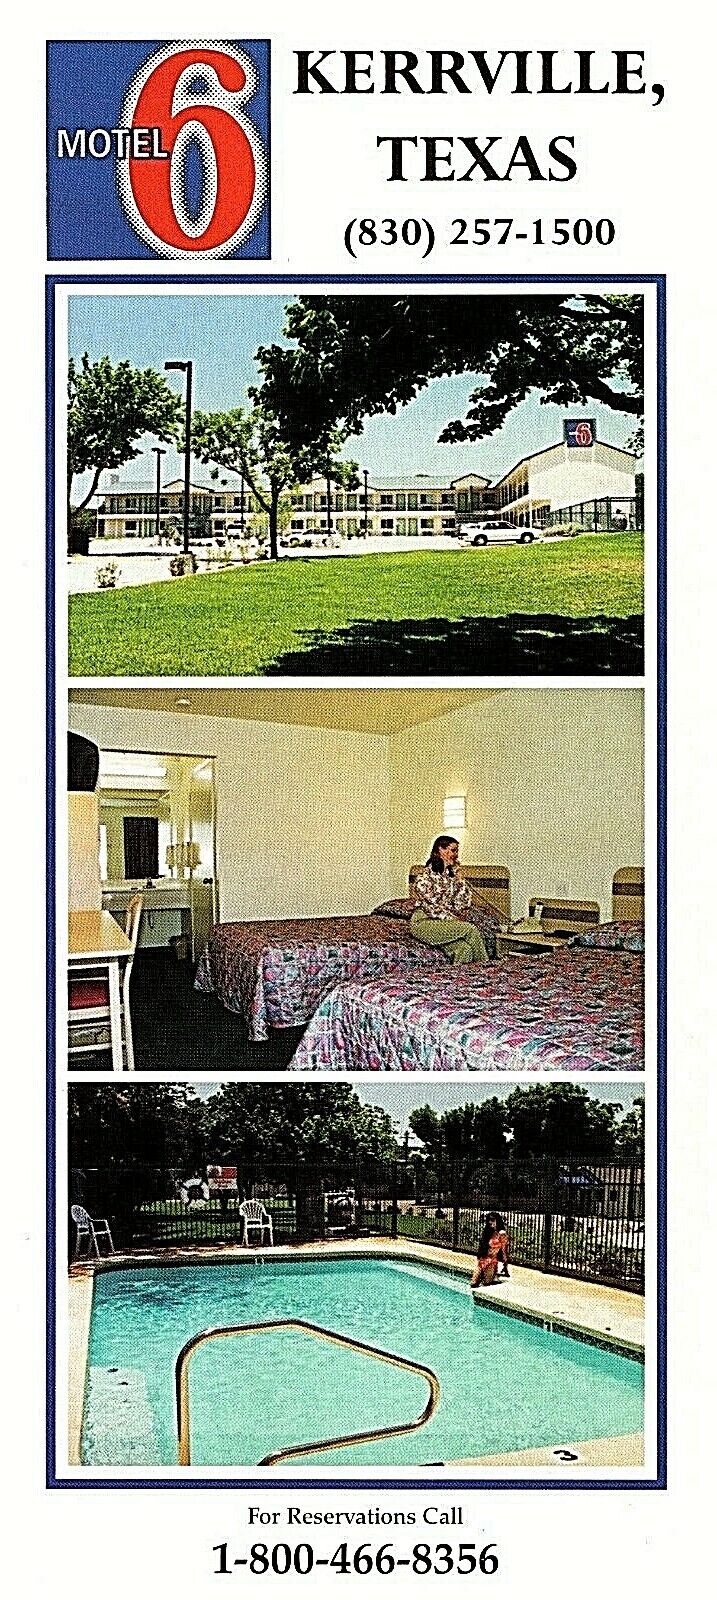 Kerrville, Texas Motel 6, Sidney Baker 43 Room Hotel ~ Kerr County Postcard TX